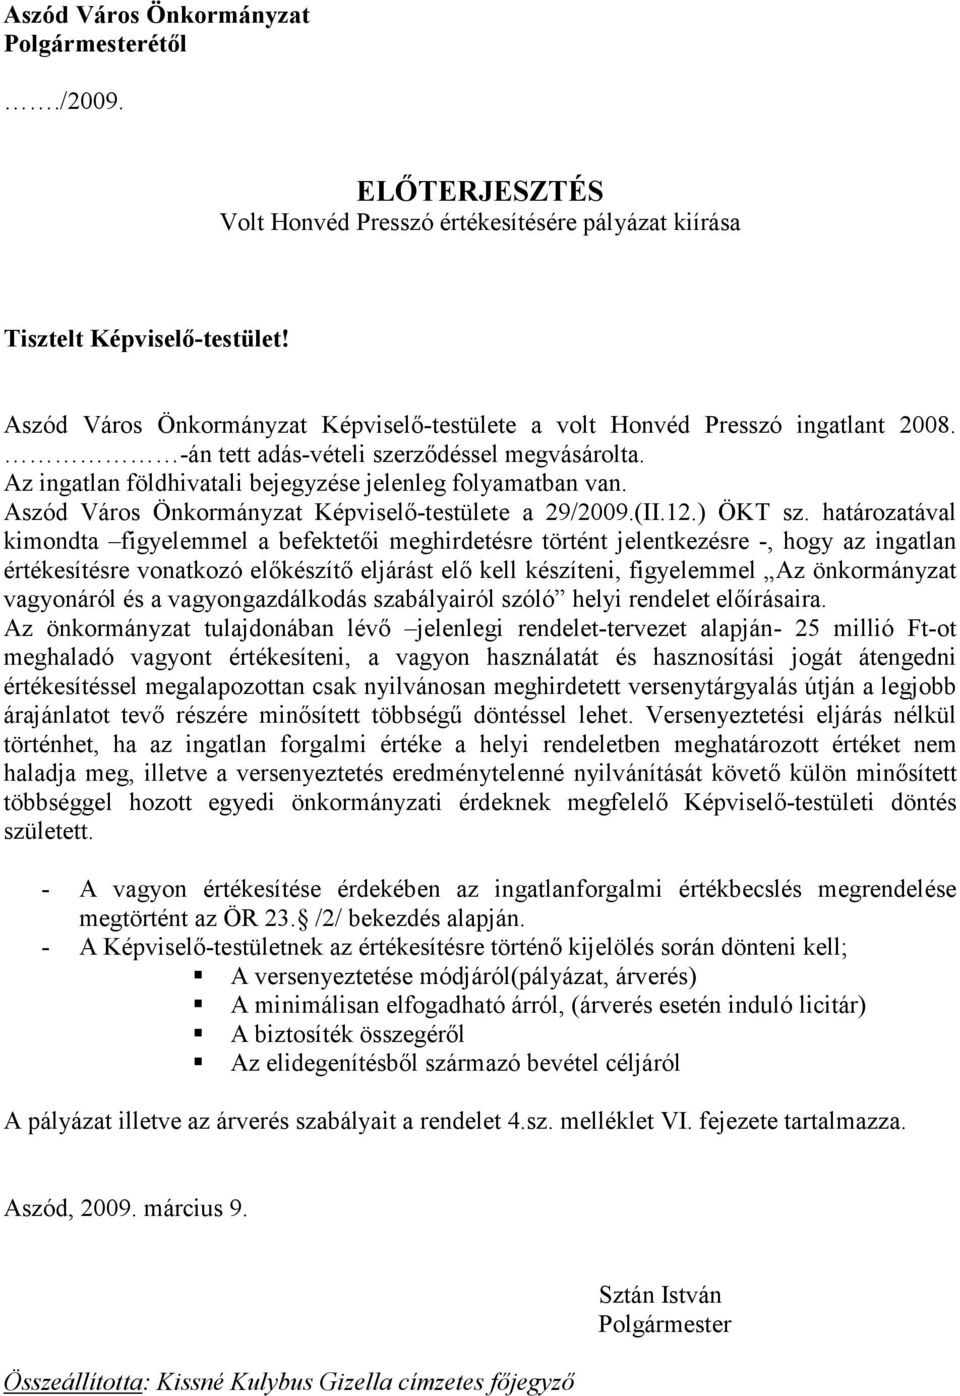 Aszód Város Önkormányzat Képviselı-testülete a 29/2009.(II.12.) ÖKT sz.